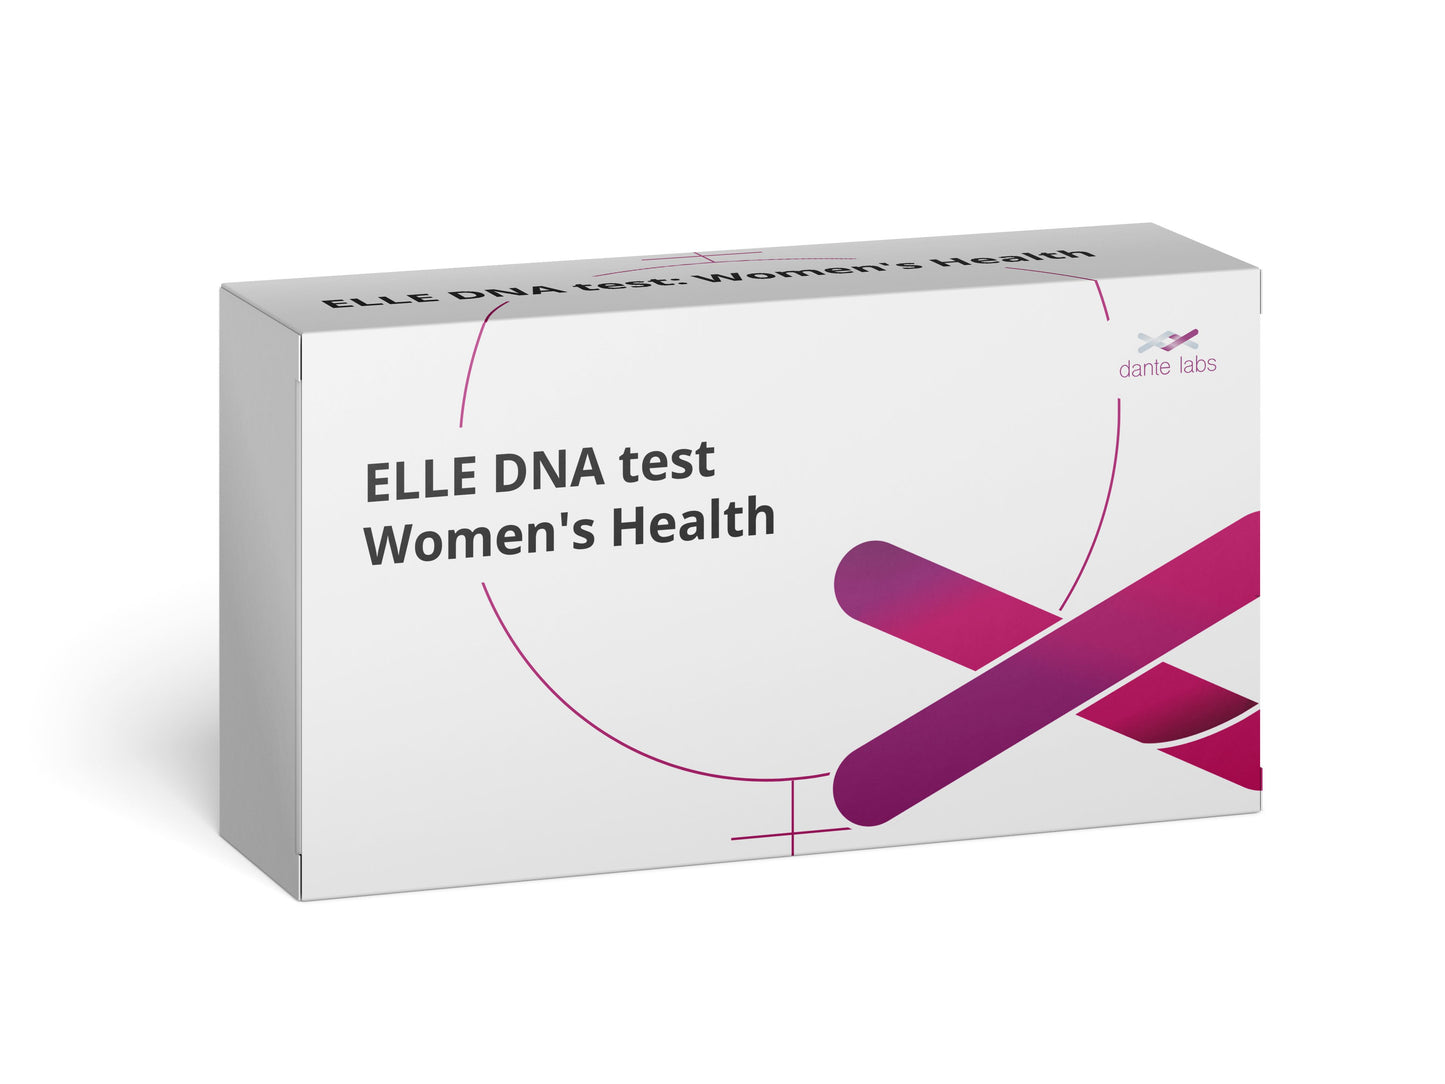 ELLE DNA test: Women's Health DNA Test - Dante Labs World